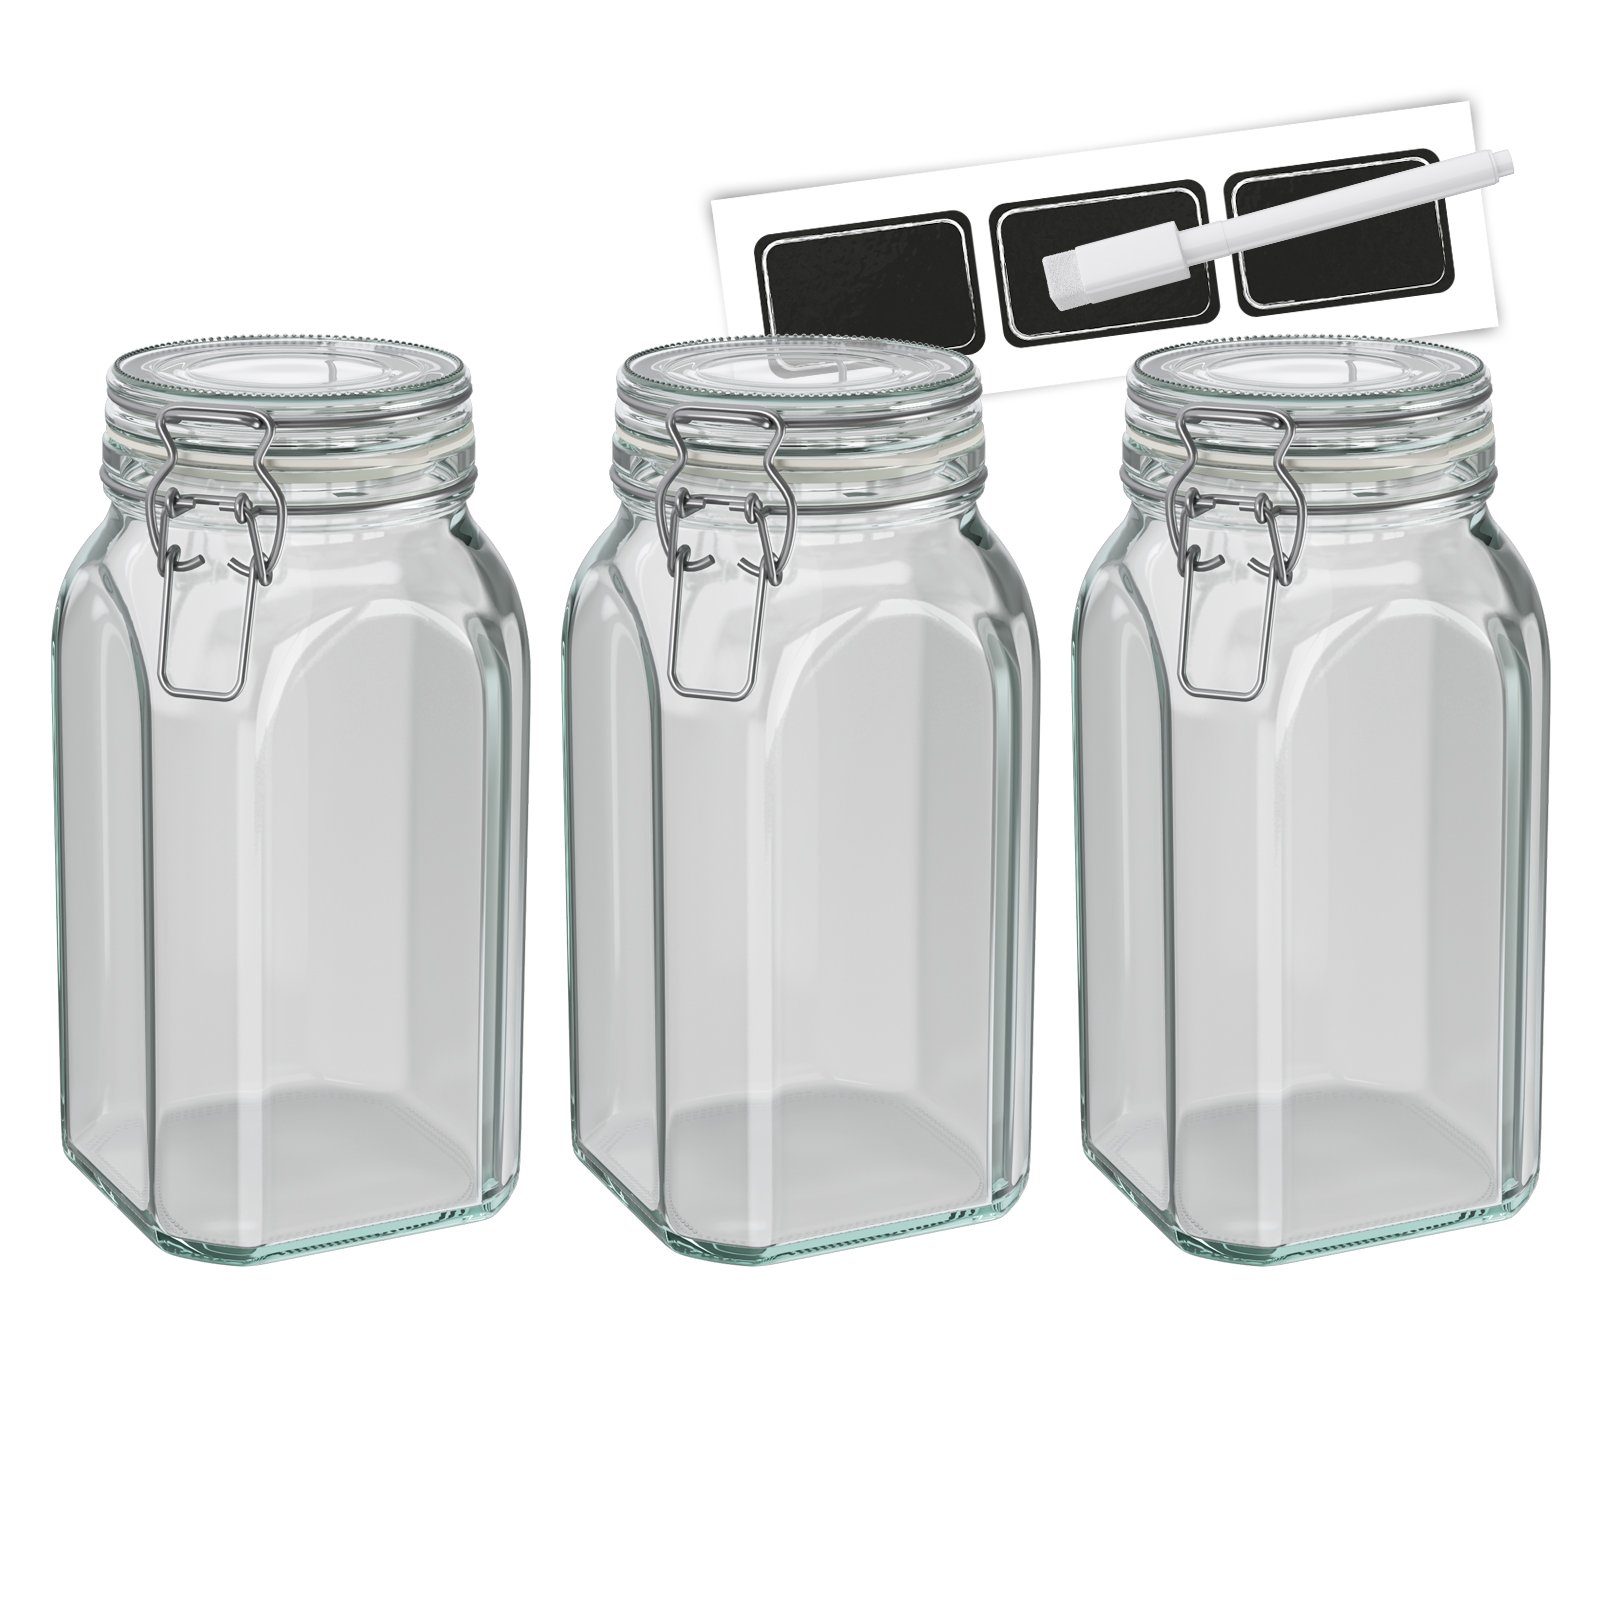 Wellgro Vorratsglas Einmachglas mit Bügelverschluss - 1540 ml  Bügelverschlussglas inkl. Etiketten und Kreidestift - Vorratsglas,  Drahtbügelglas, Nudelglas - Glas Made in Germany, (3-tlg)